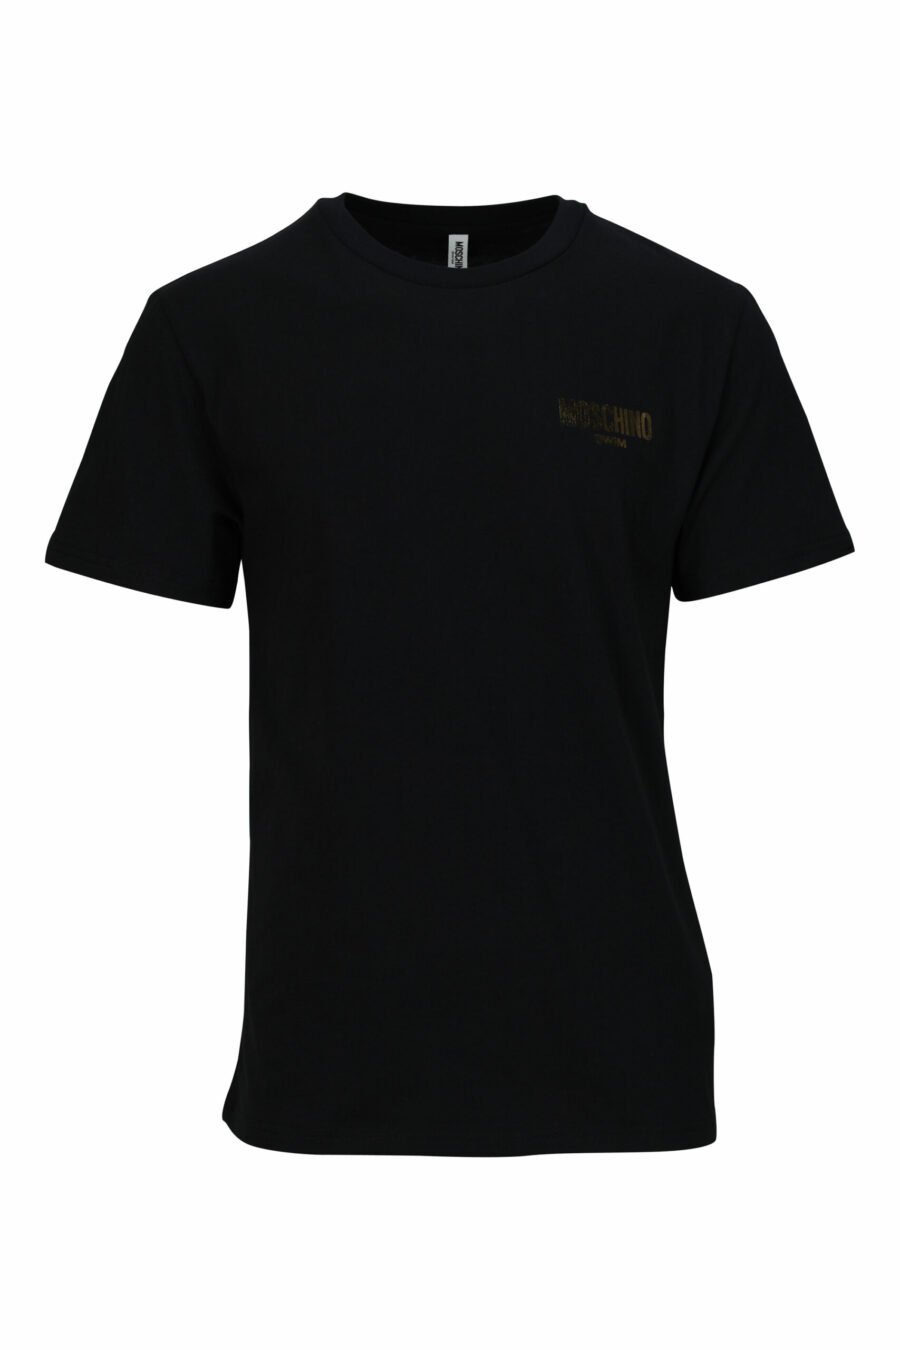 T-shirt preta com minilogo dourado "swim" - 667113673073 scaled